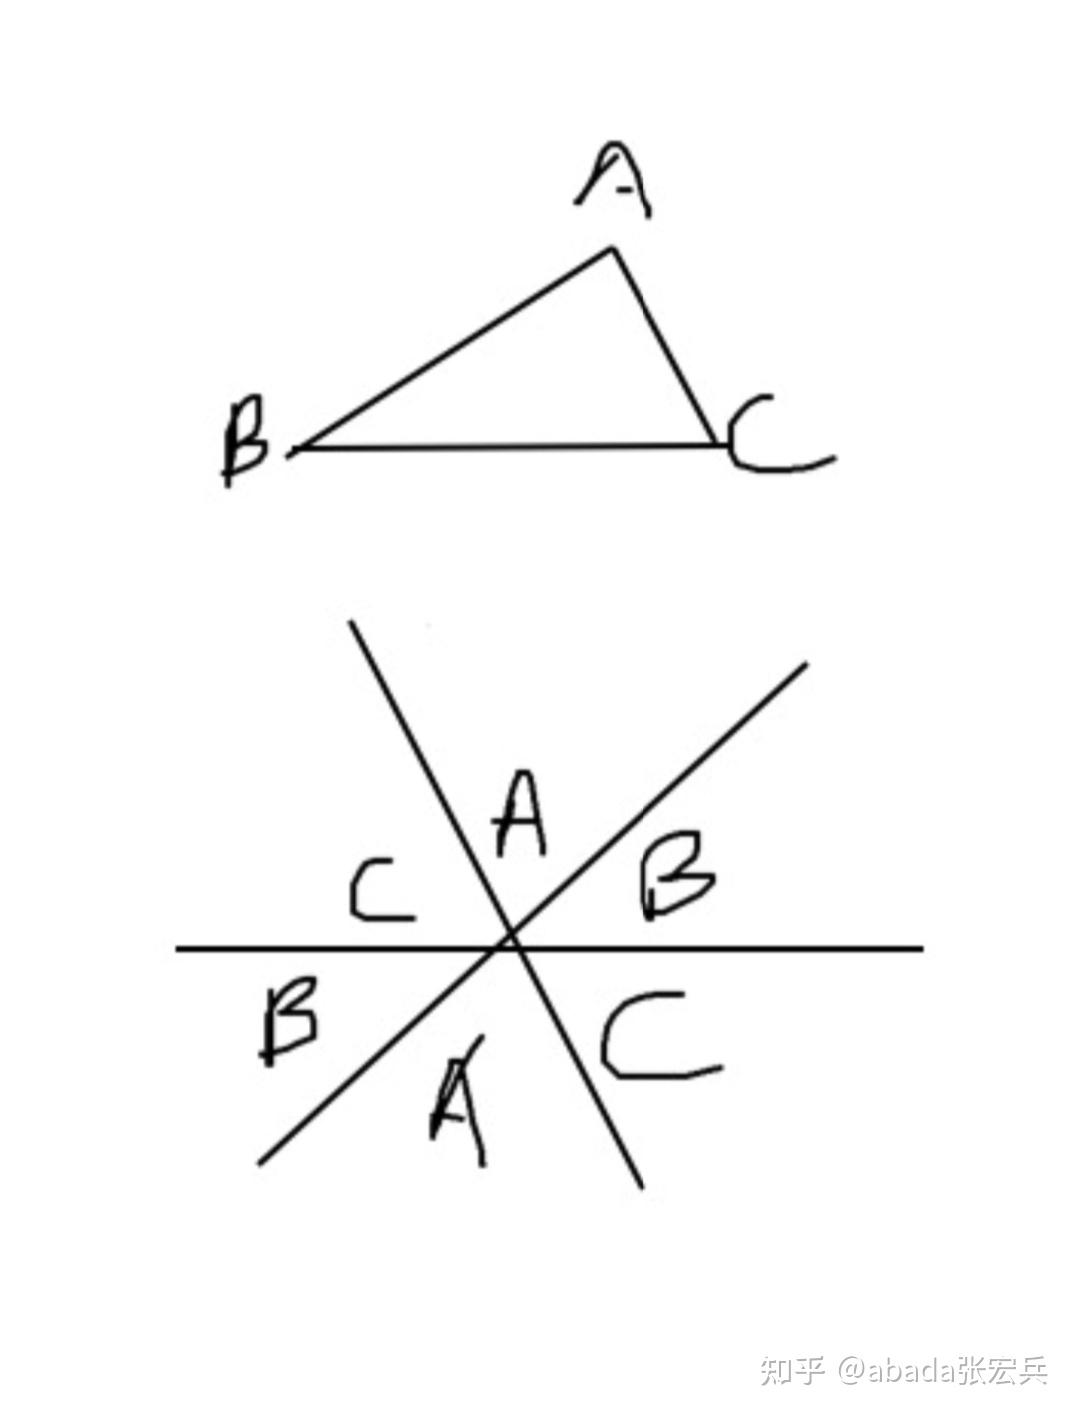 如何证明三角形的内角和为180度? 